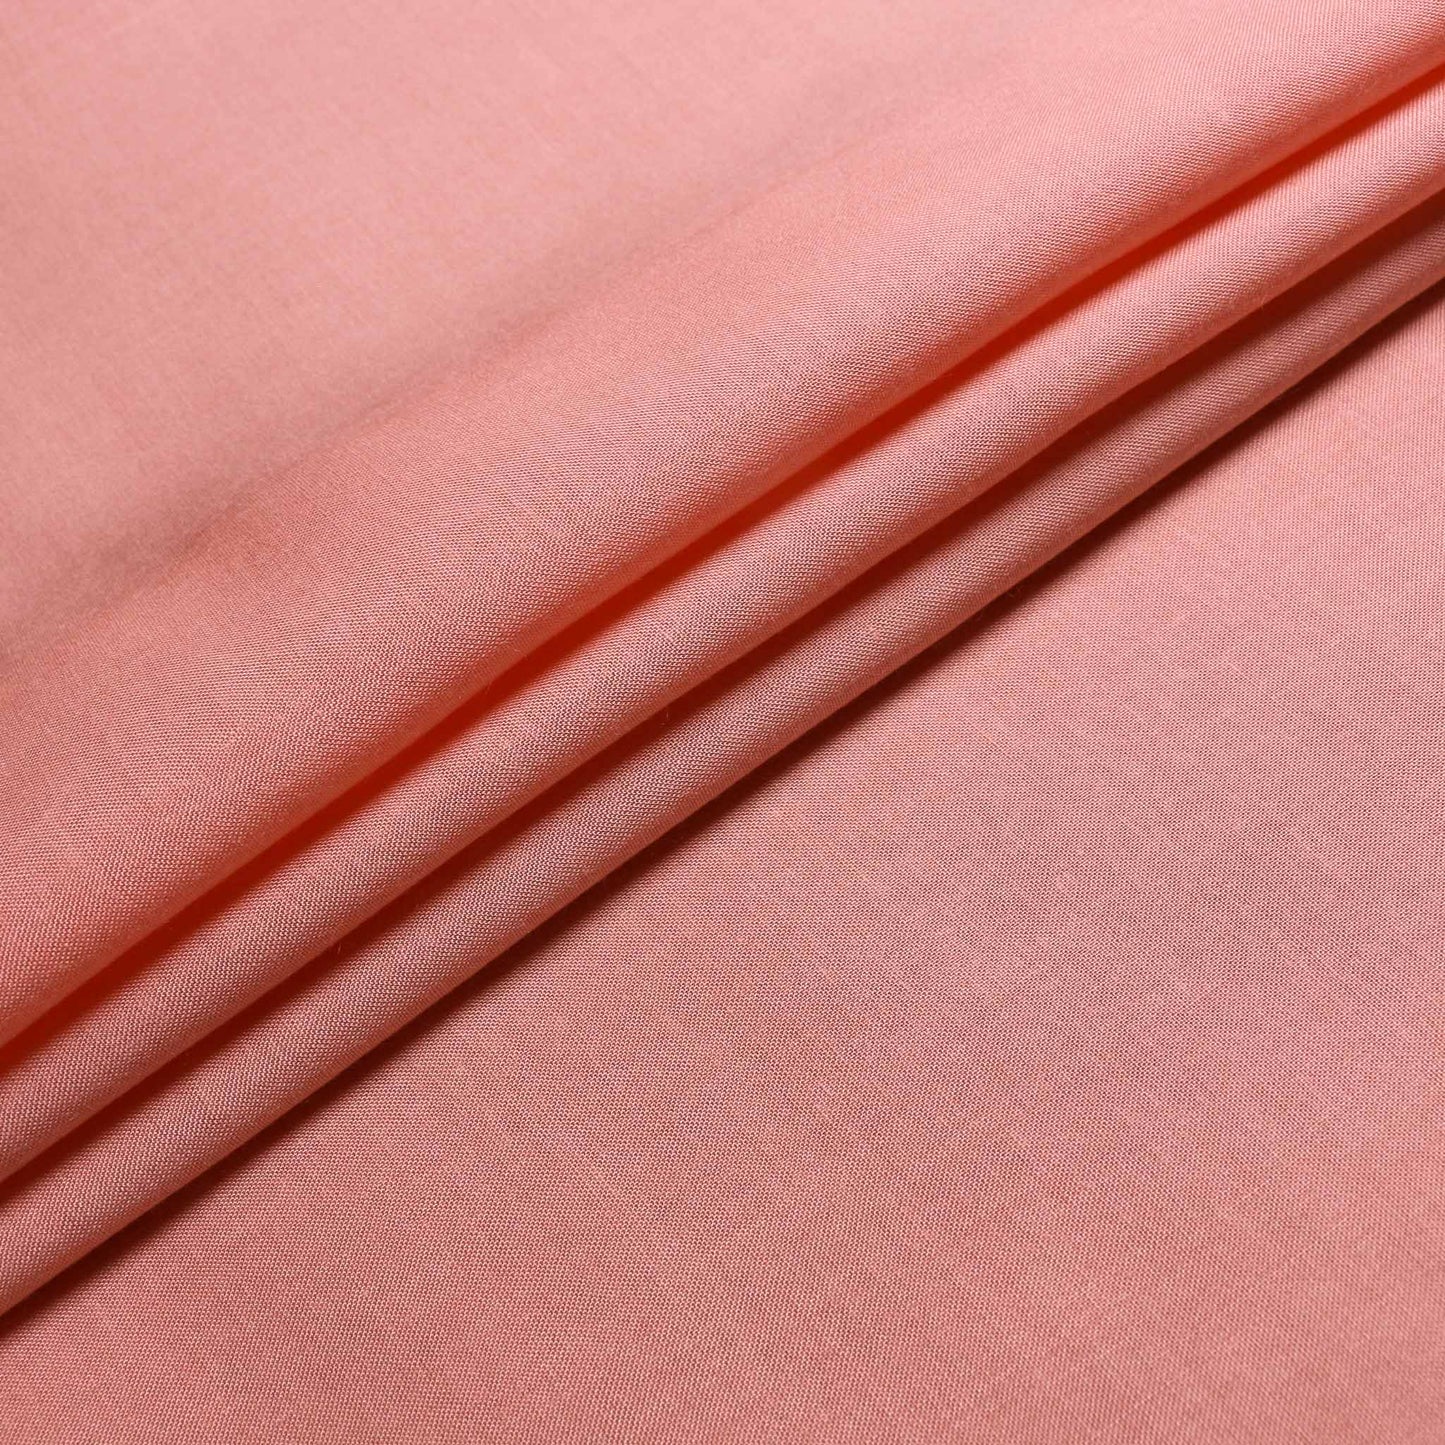 folded peach viscose challis dress fabric uk